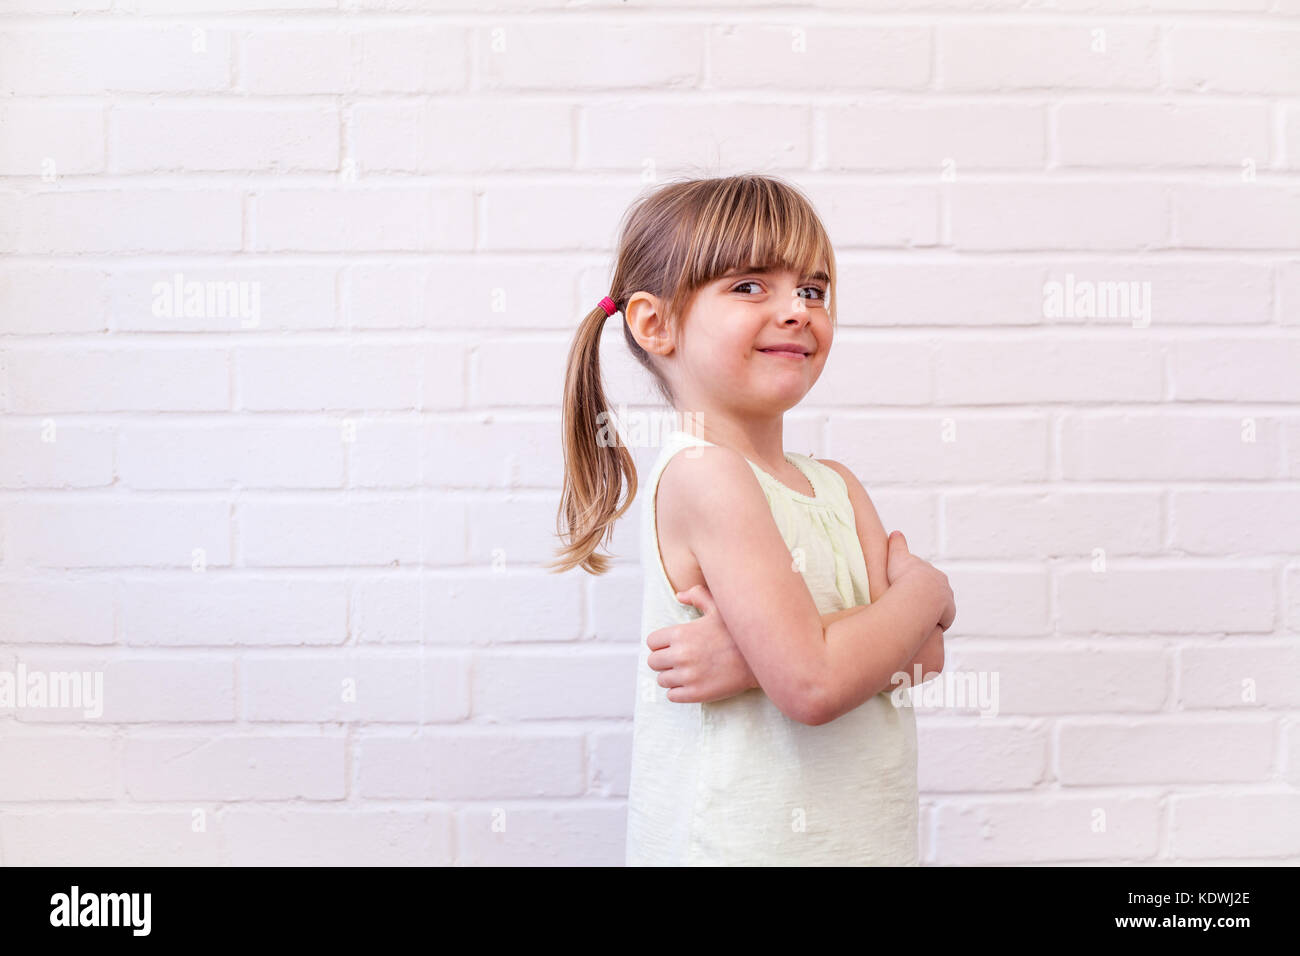 Attraktive kleine blonde Mädchen Profil Brustbild. Cute kid mit Waffen gegen die weiße Wand gefaltet Stockfoto